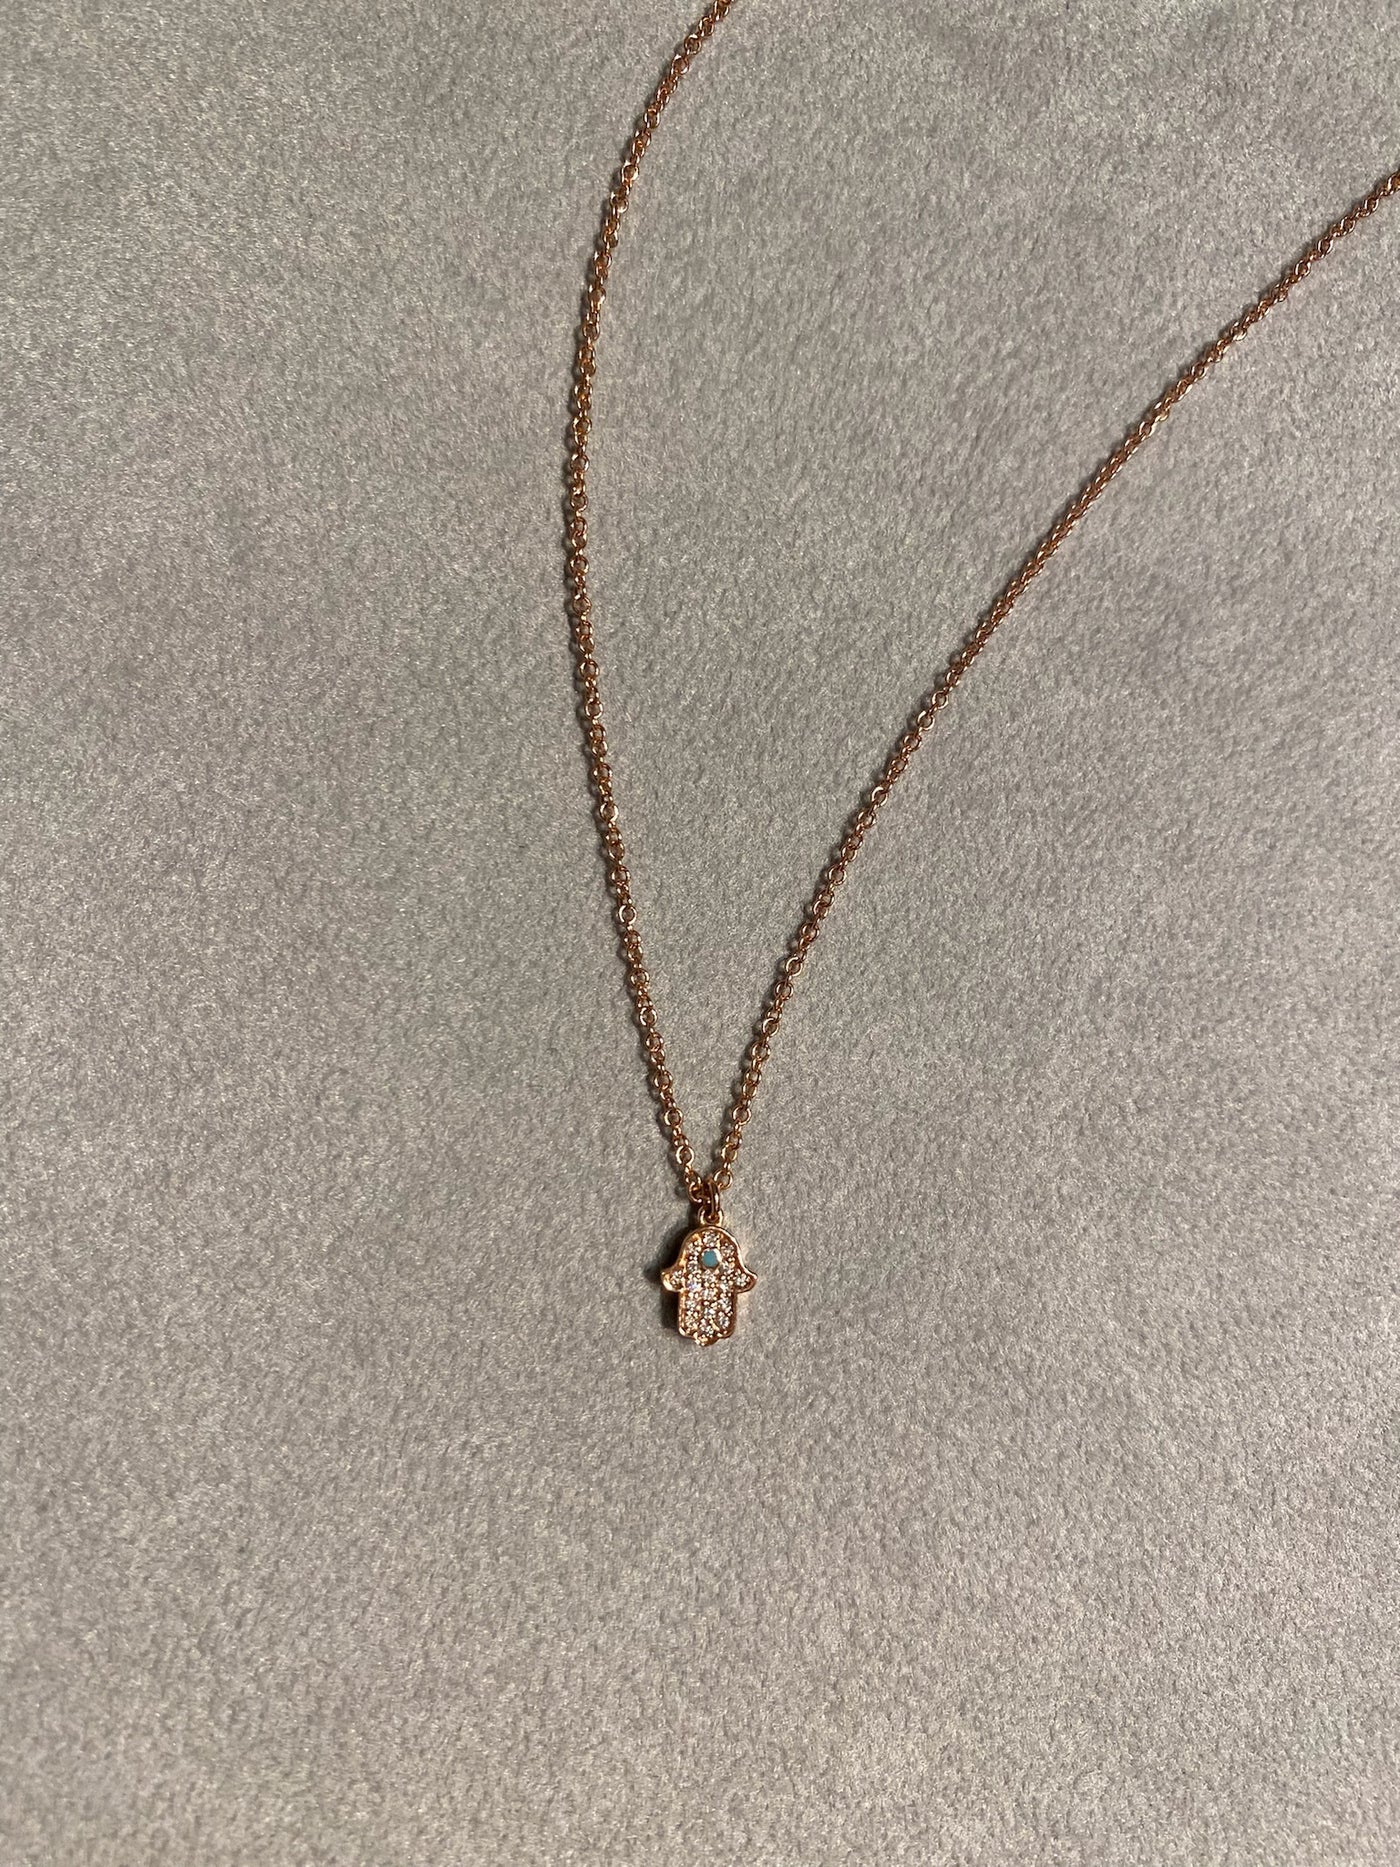 Hamsa necklace